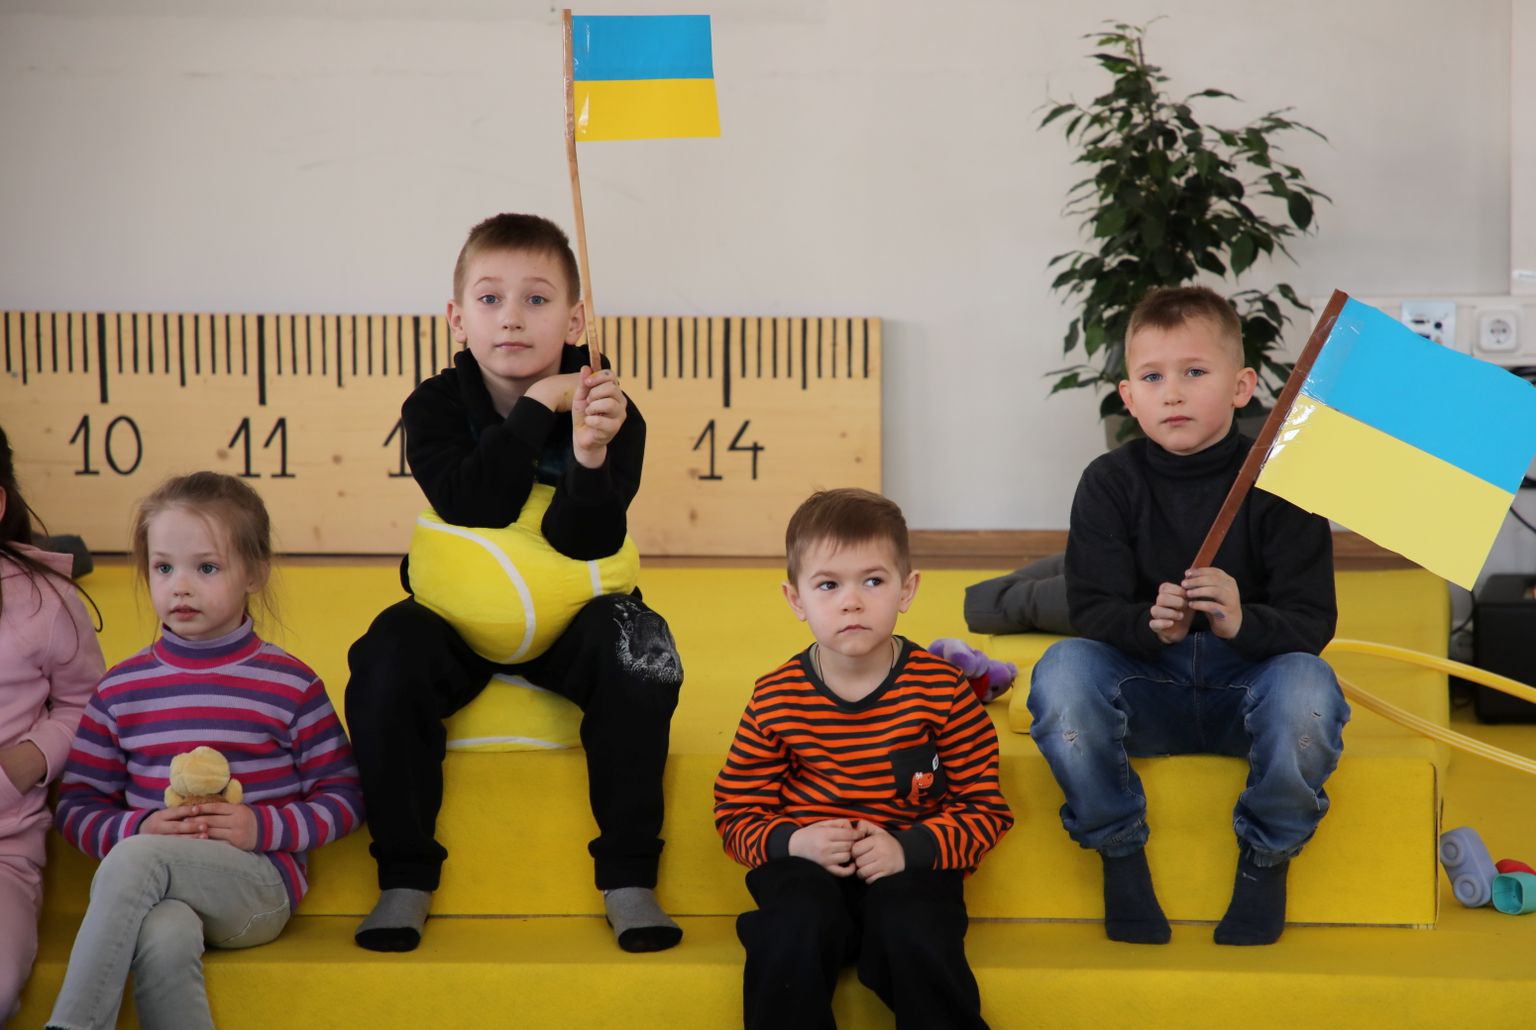 Дети в центре для поддержки жителей Украины на улице Калькю